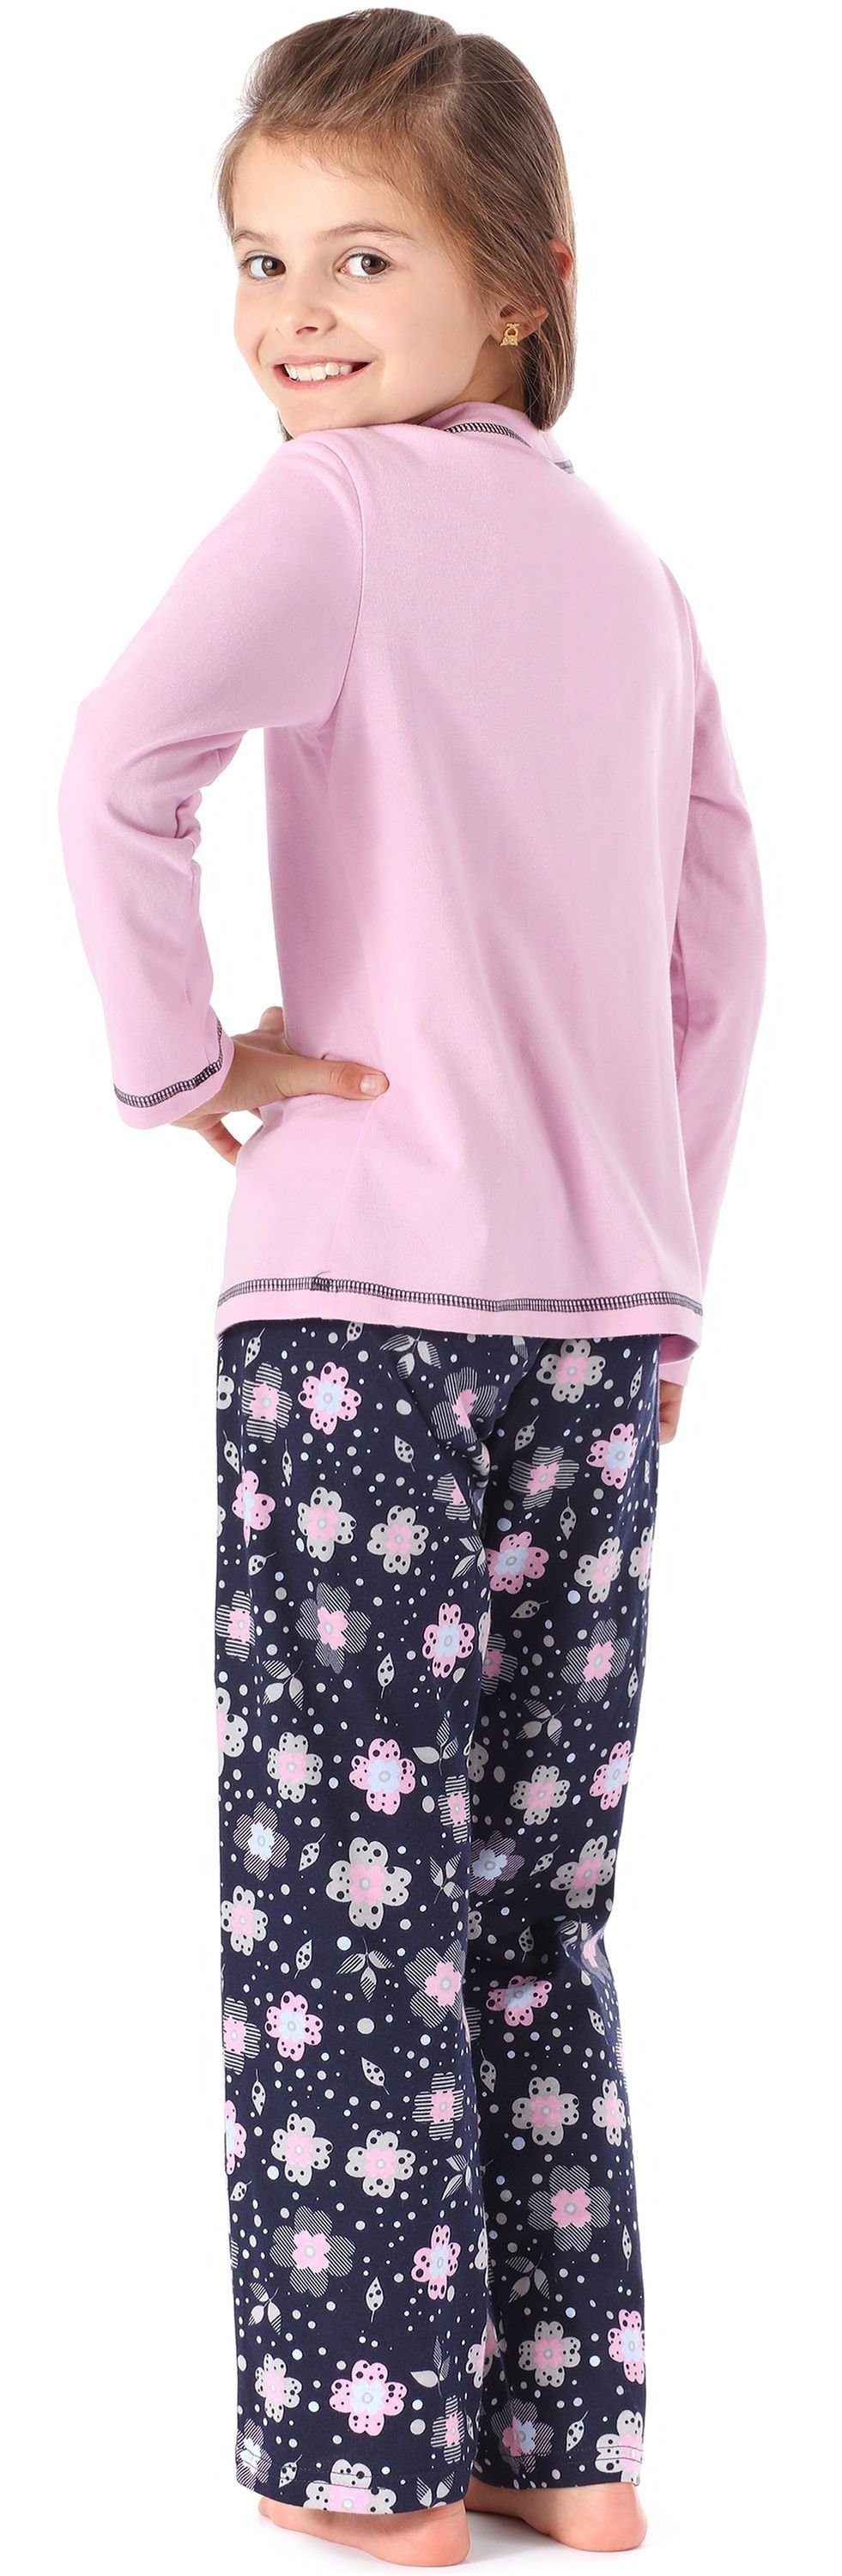 Schlafanzug MS10-215 Mädchen Style Merry Schlafanzug Rosa/Blumen